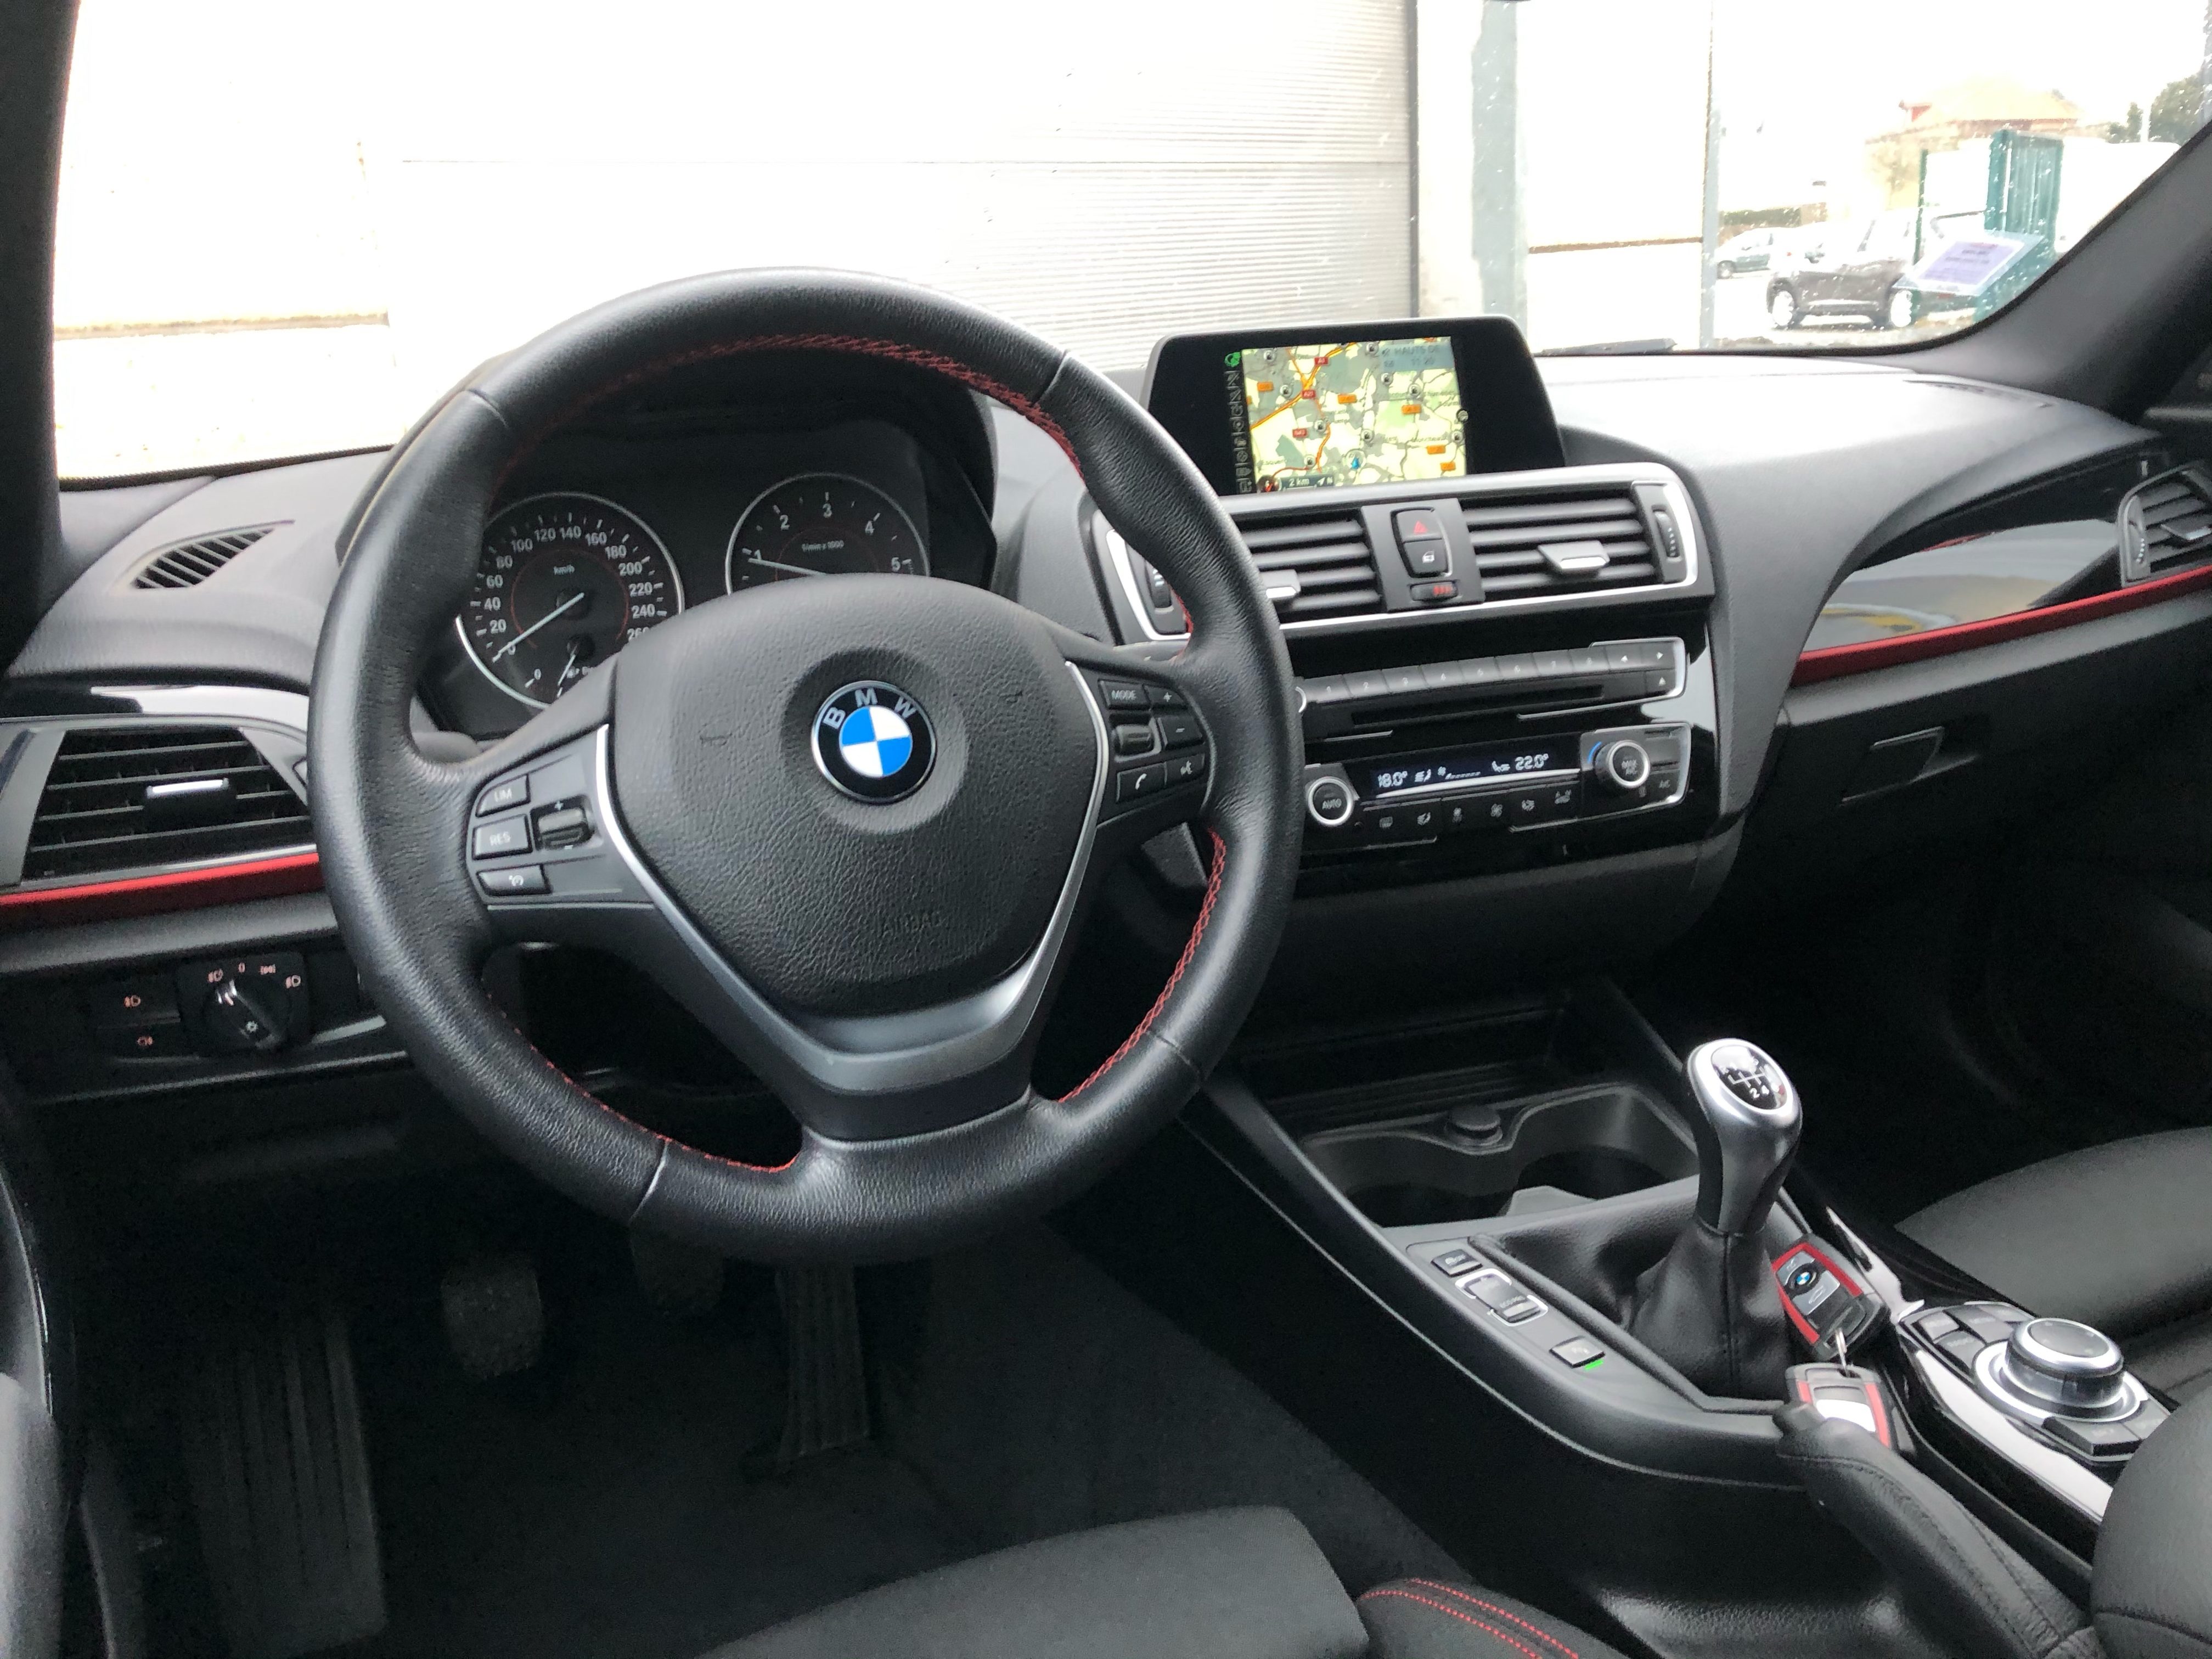 Vidéo intérieure de la BMW Série 1 F20